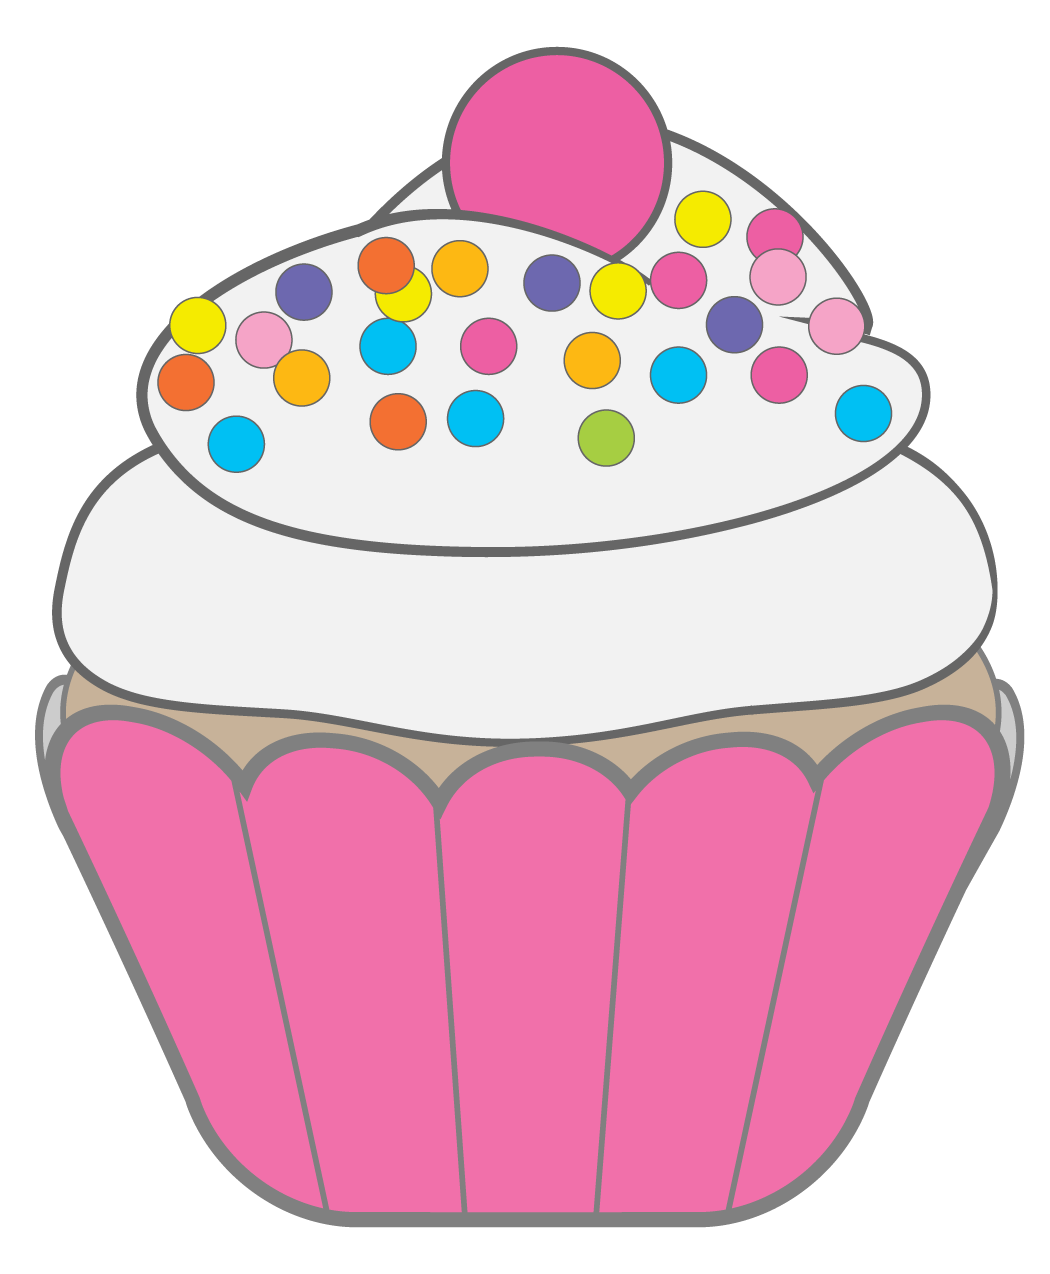 ... Cute Cupcake Clip Art - ClipArt Best ...